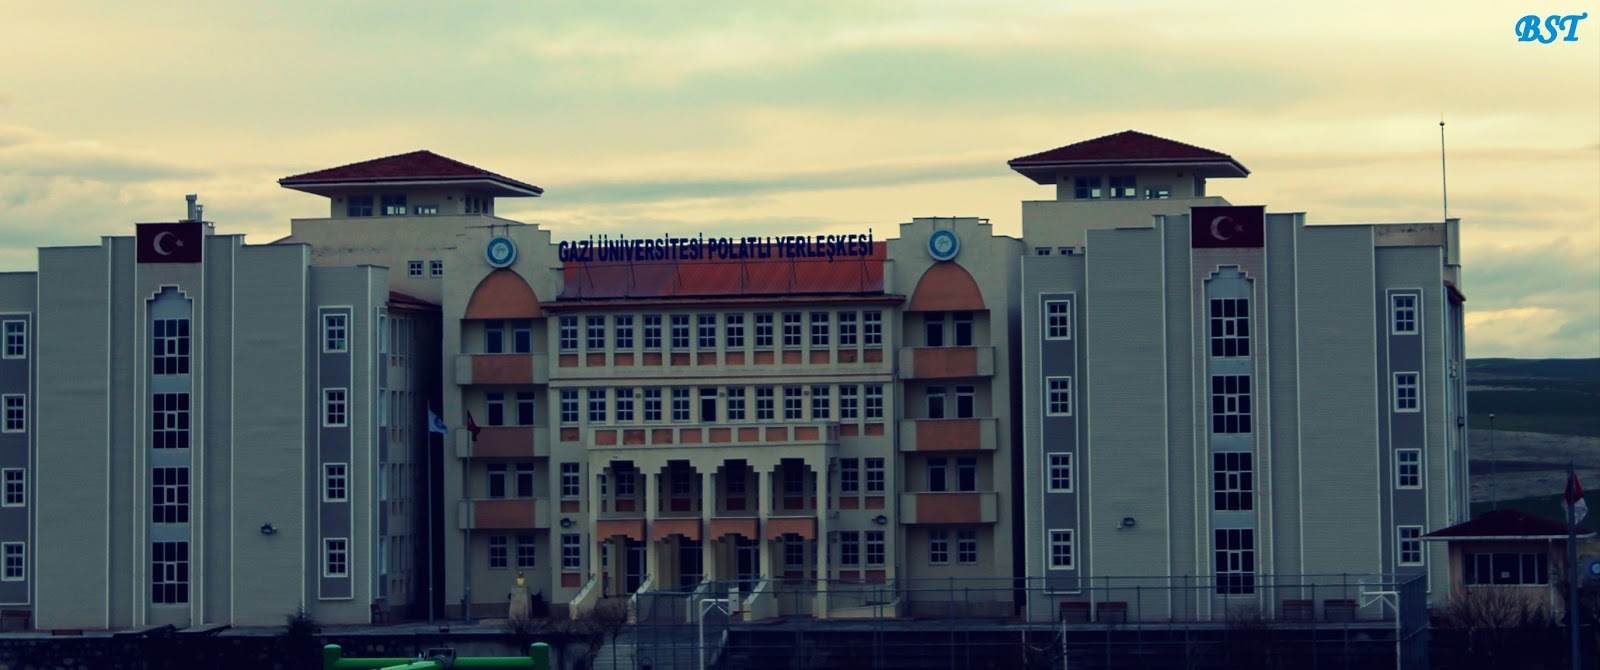 Gazi Üniversitesi Polatlı Yerleşkesi